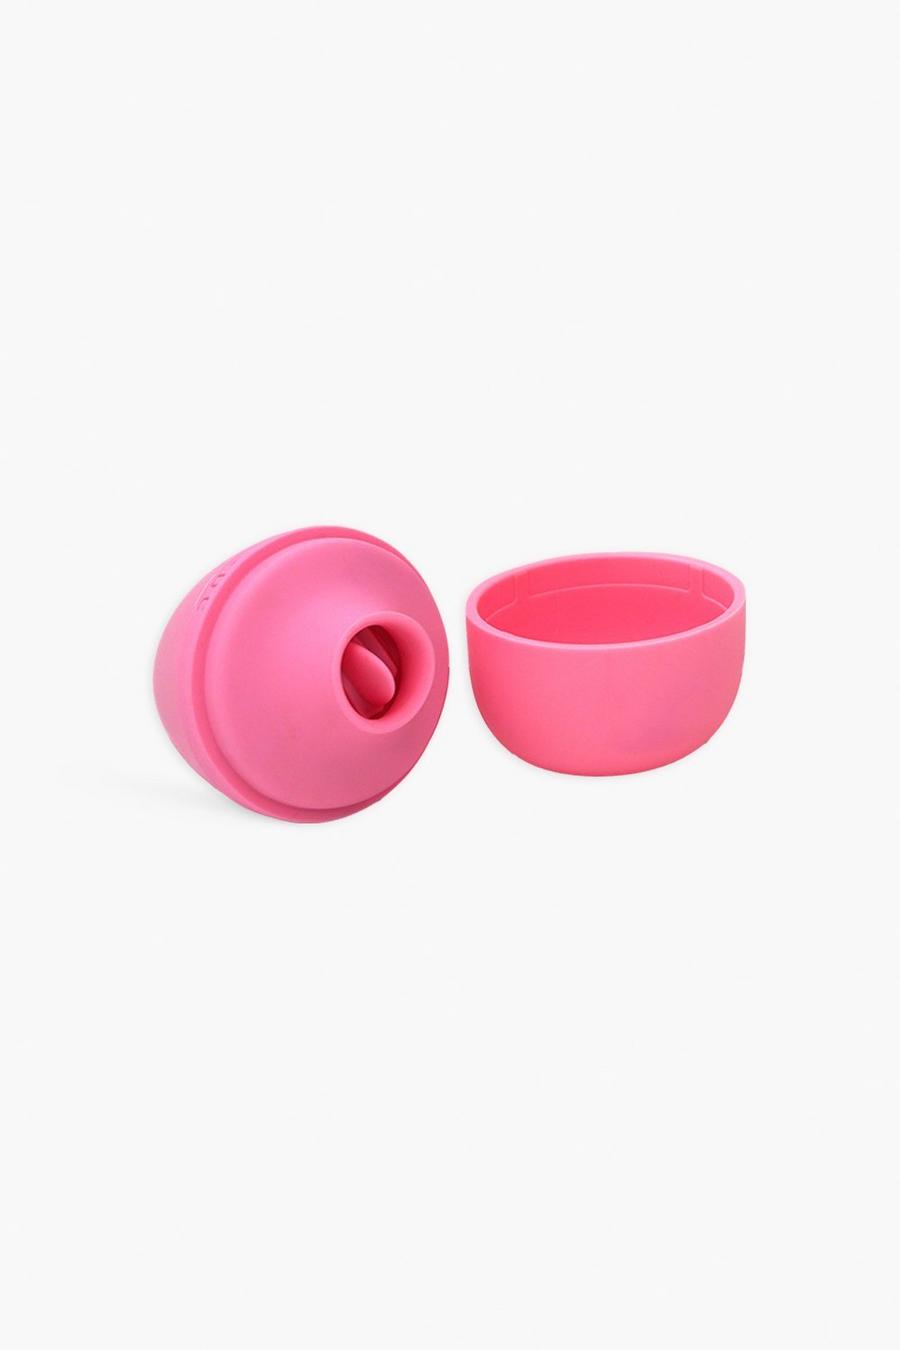 Vibrador The Scream Egg Minis de Skins, Pink rosa